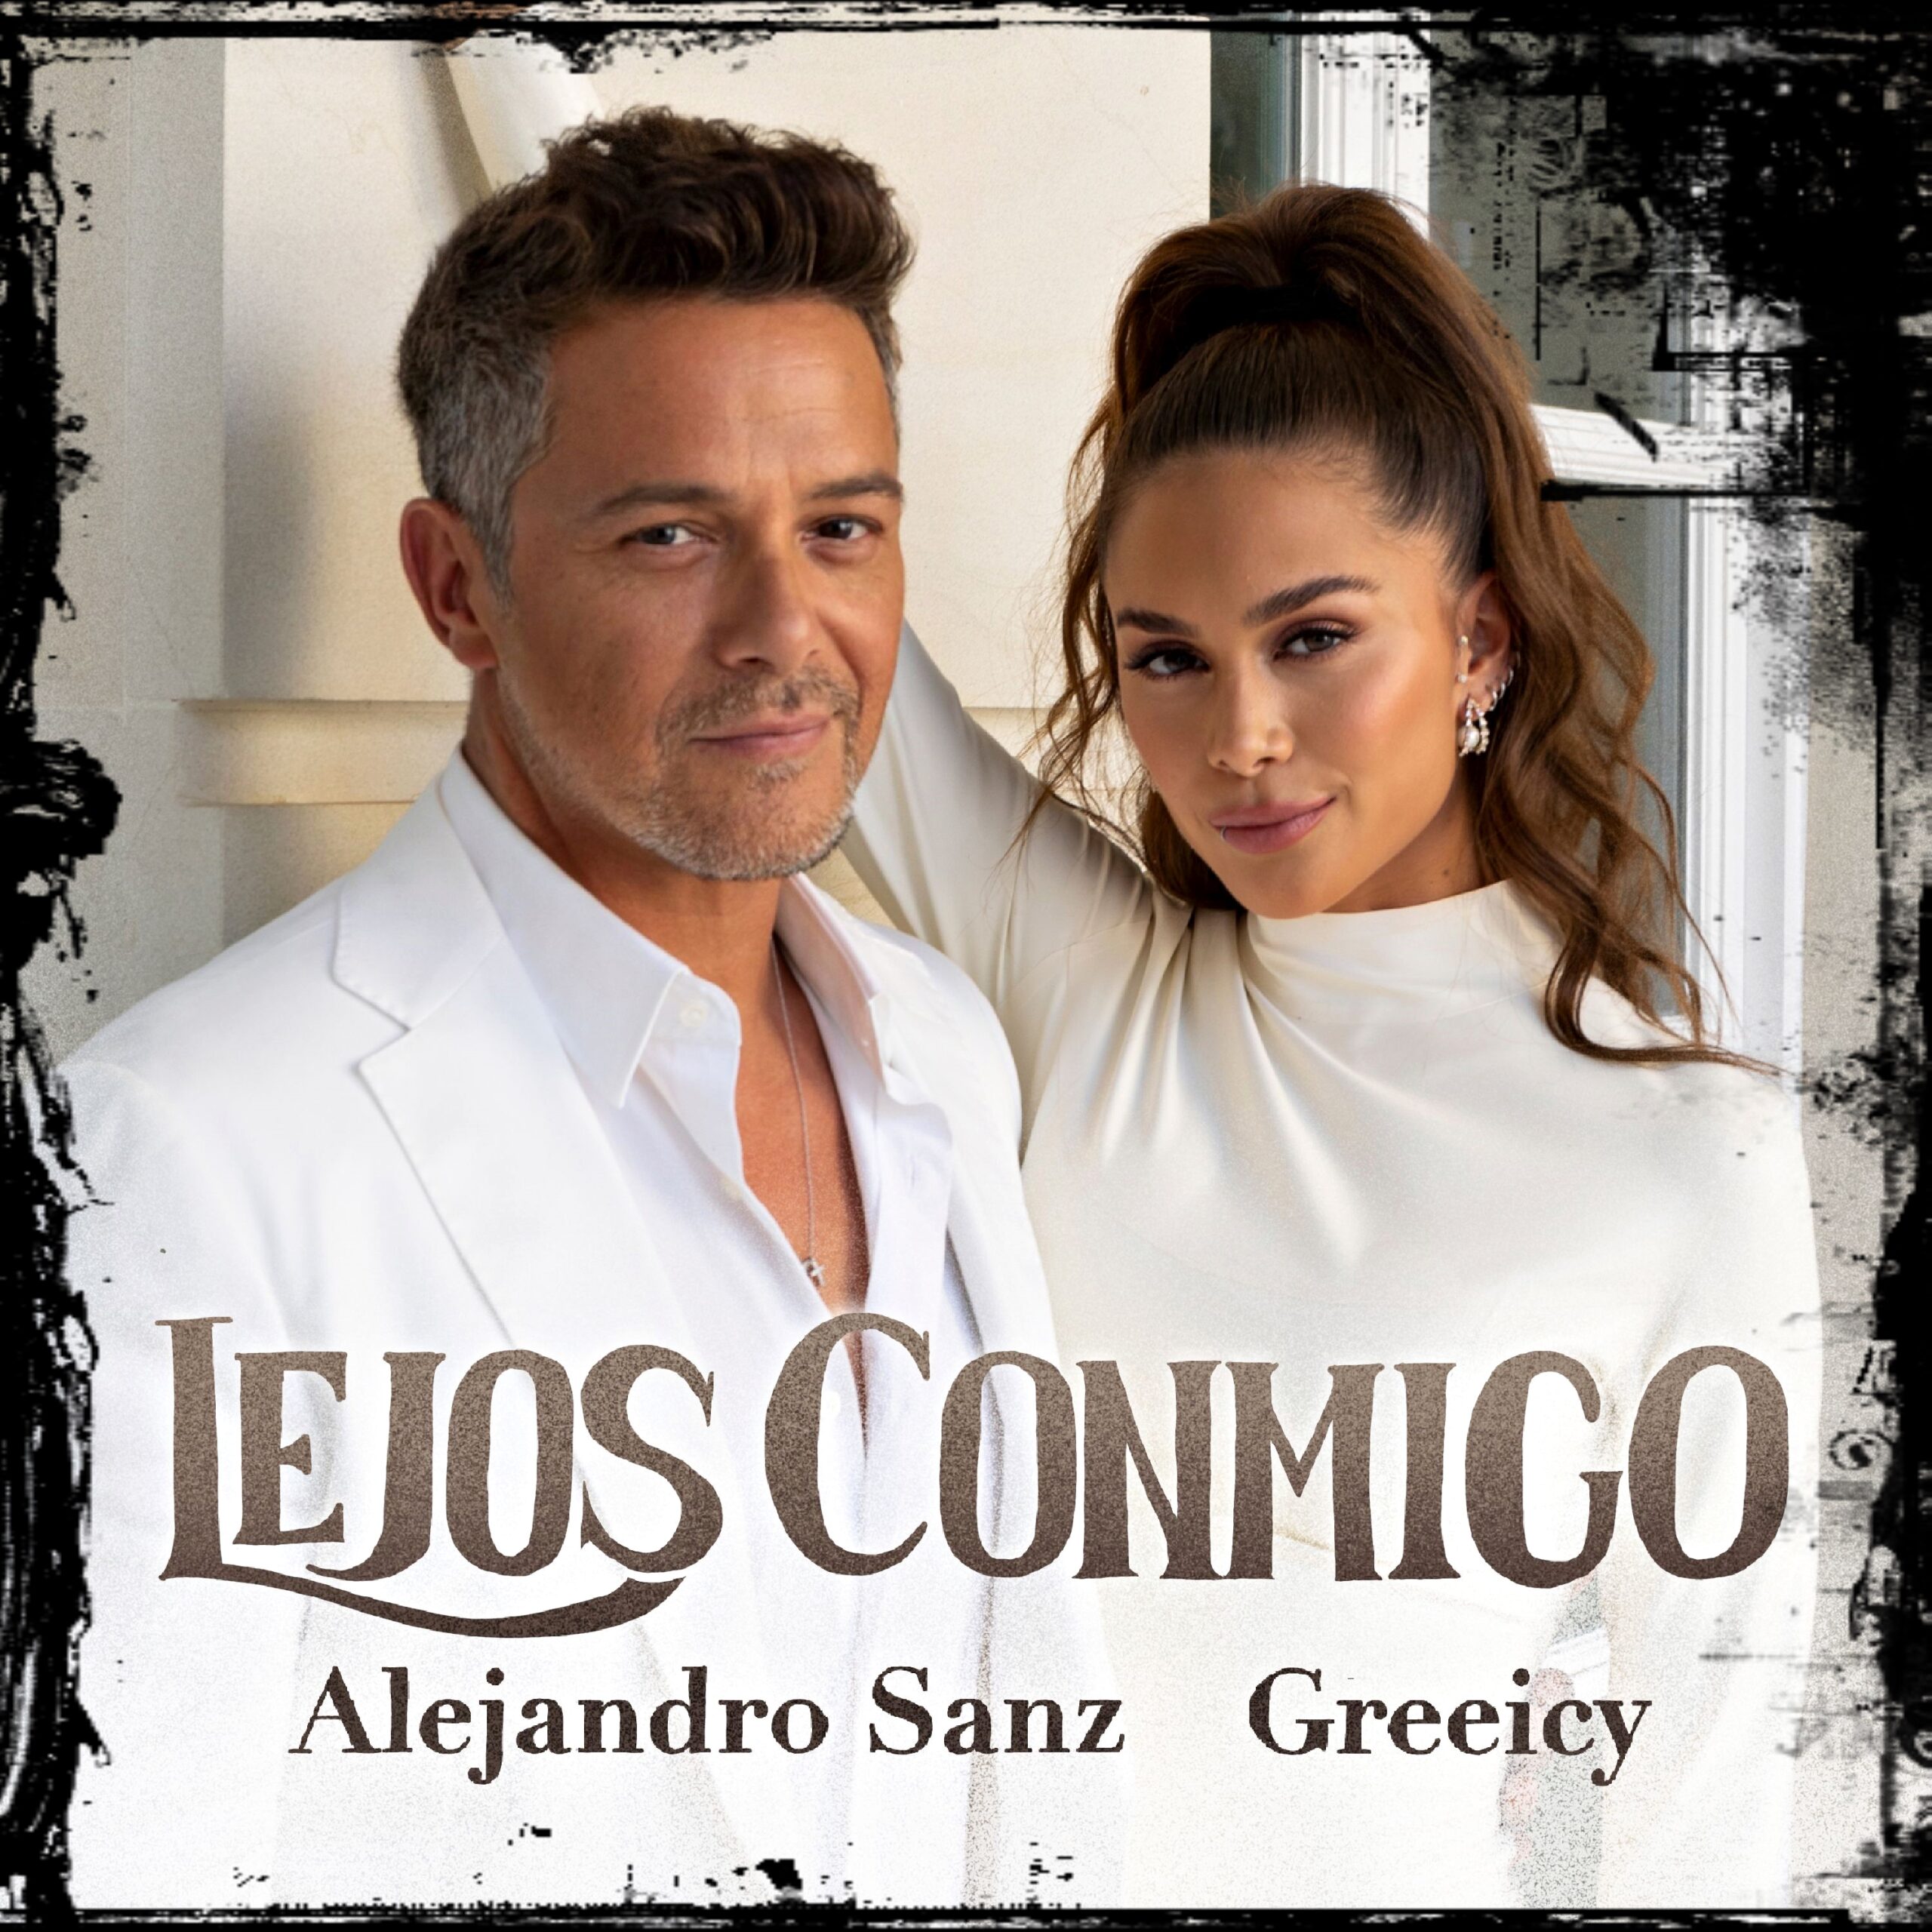 Greeicy junto a Alejandro Sanz en «Lejos Conmigo»